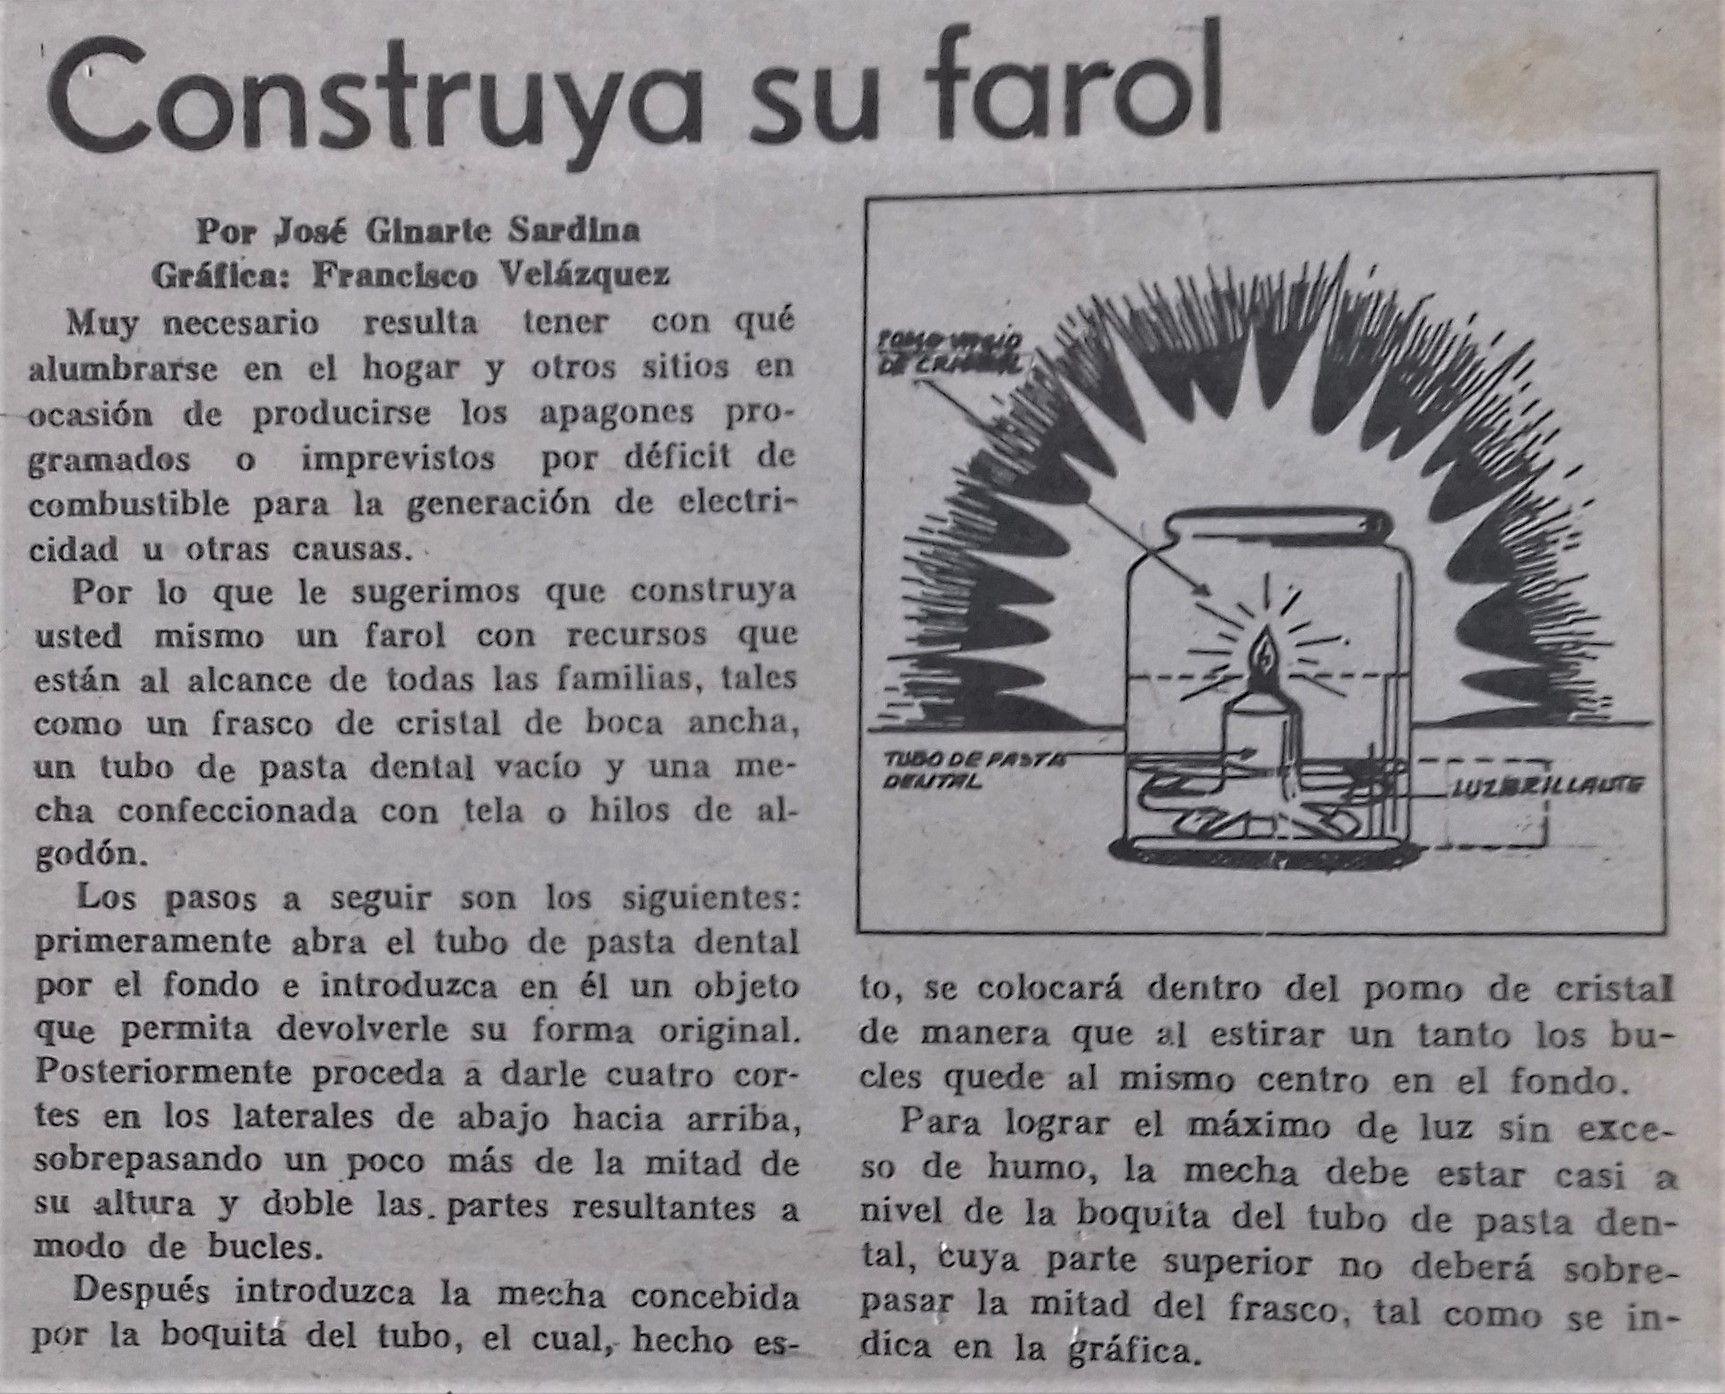 Capitalismo en Cuba, privatizaciones, economía estatal, inversiones de capital internacional. - Página 17 Semanario_Sierra_Maestra_1993_068124a720